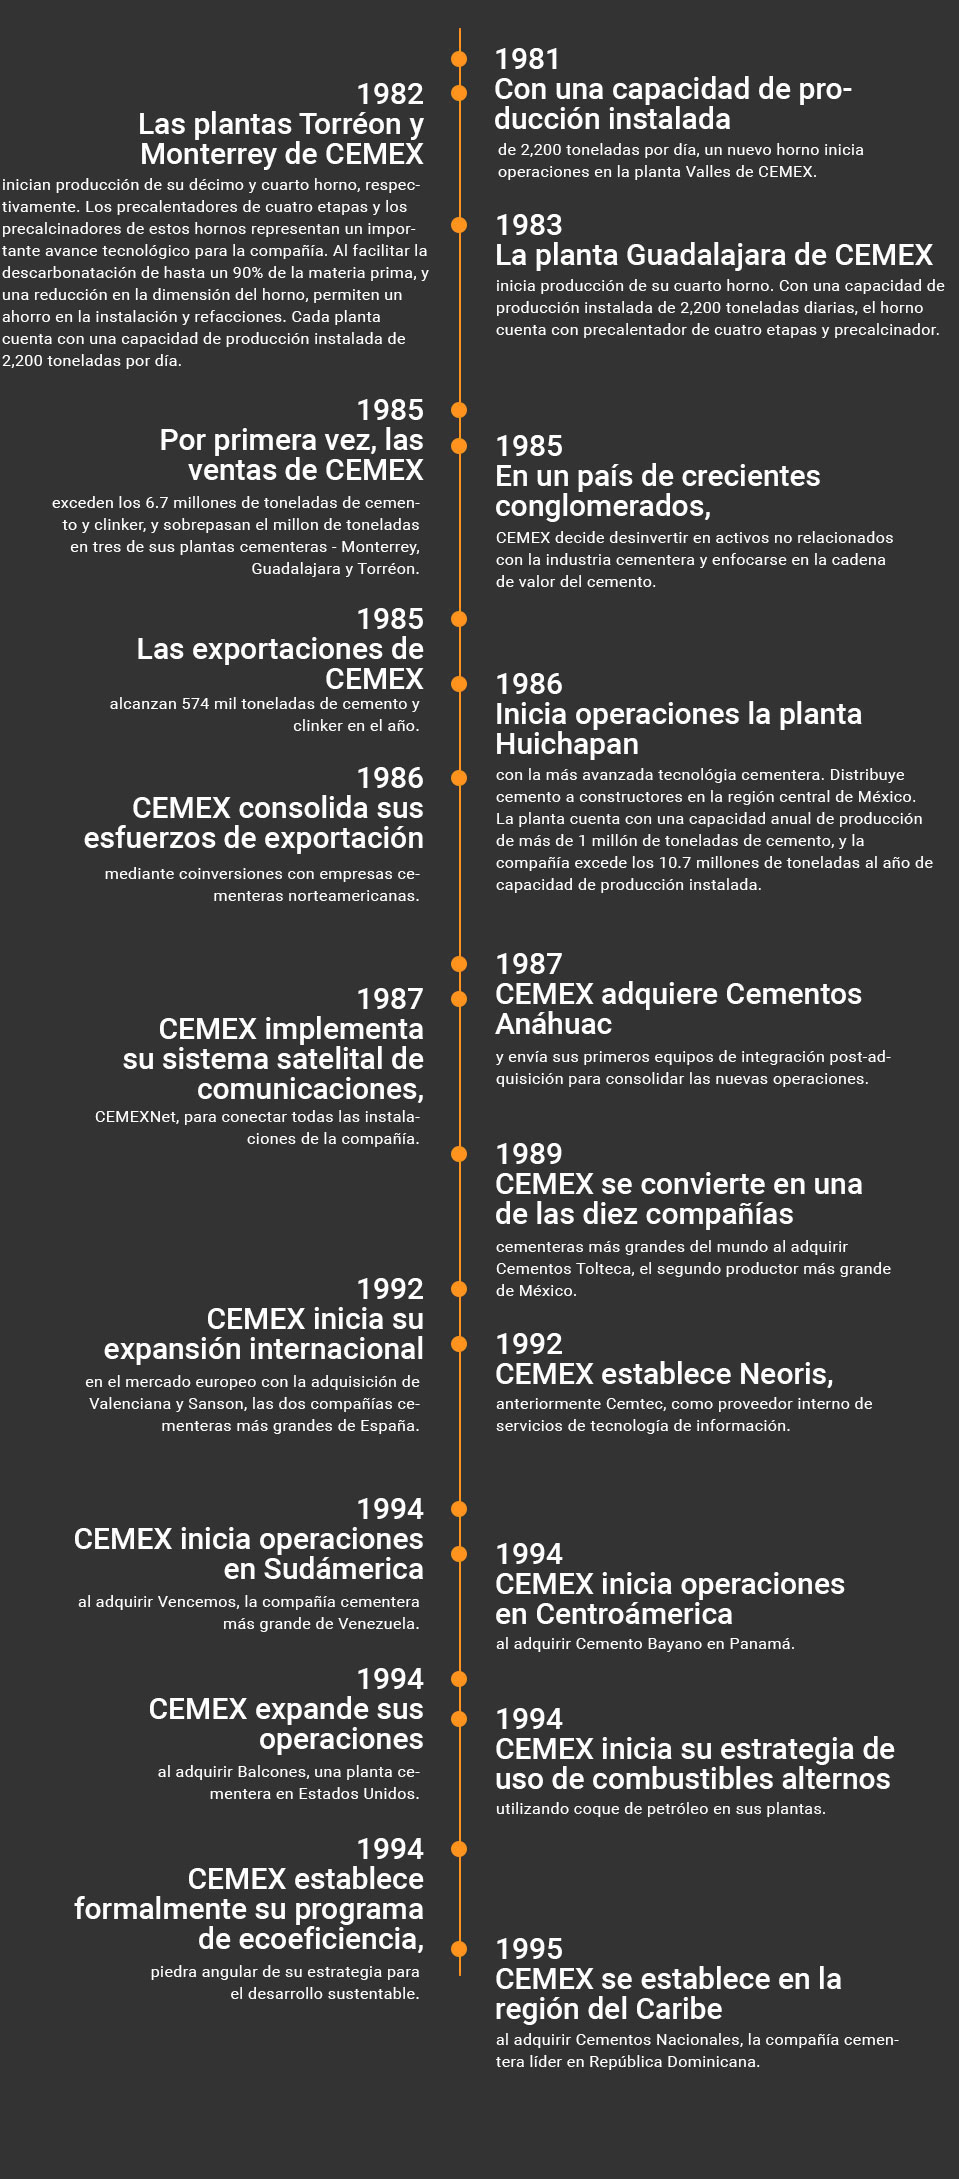 Imagen, Cronología sobre Nuestra Historia, 1981 a 1995